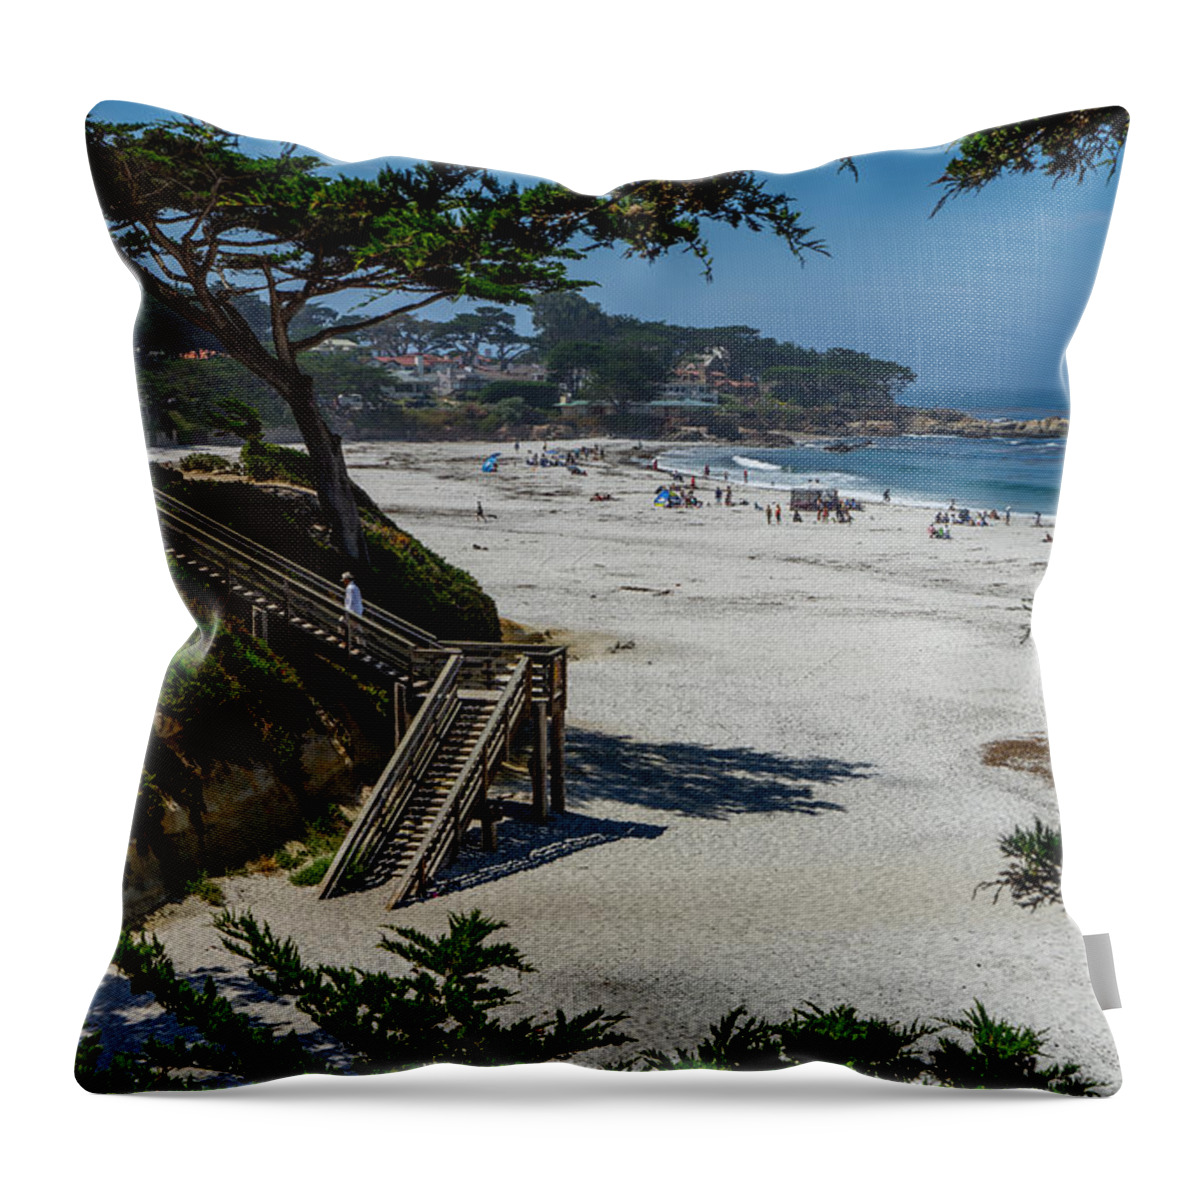 Carmel Throw Pillow featuring the photograph Carmel Beach Stairs by Derek Dean